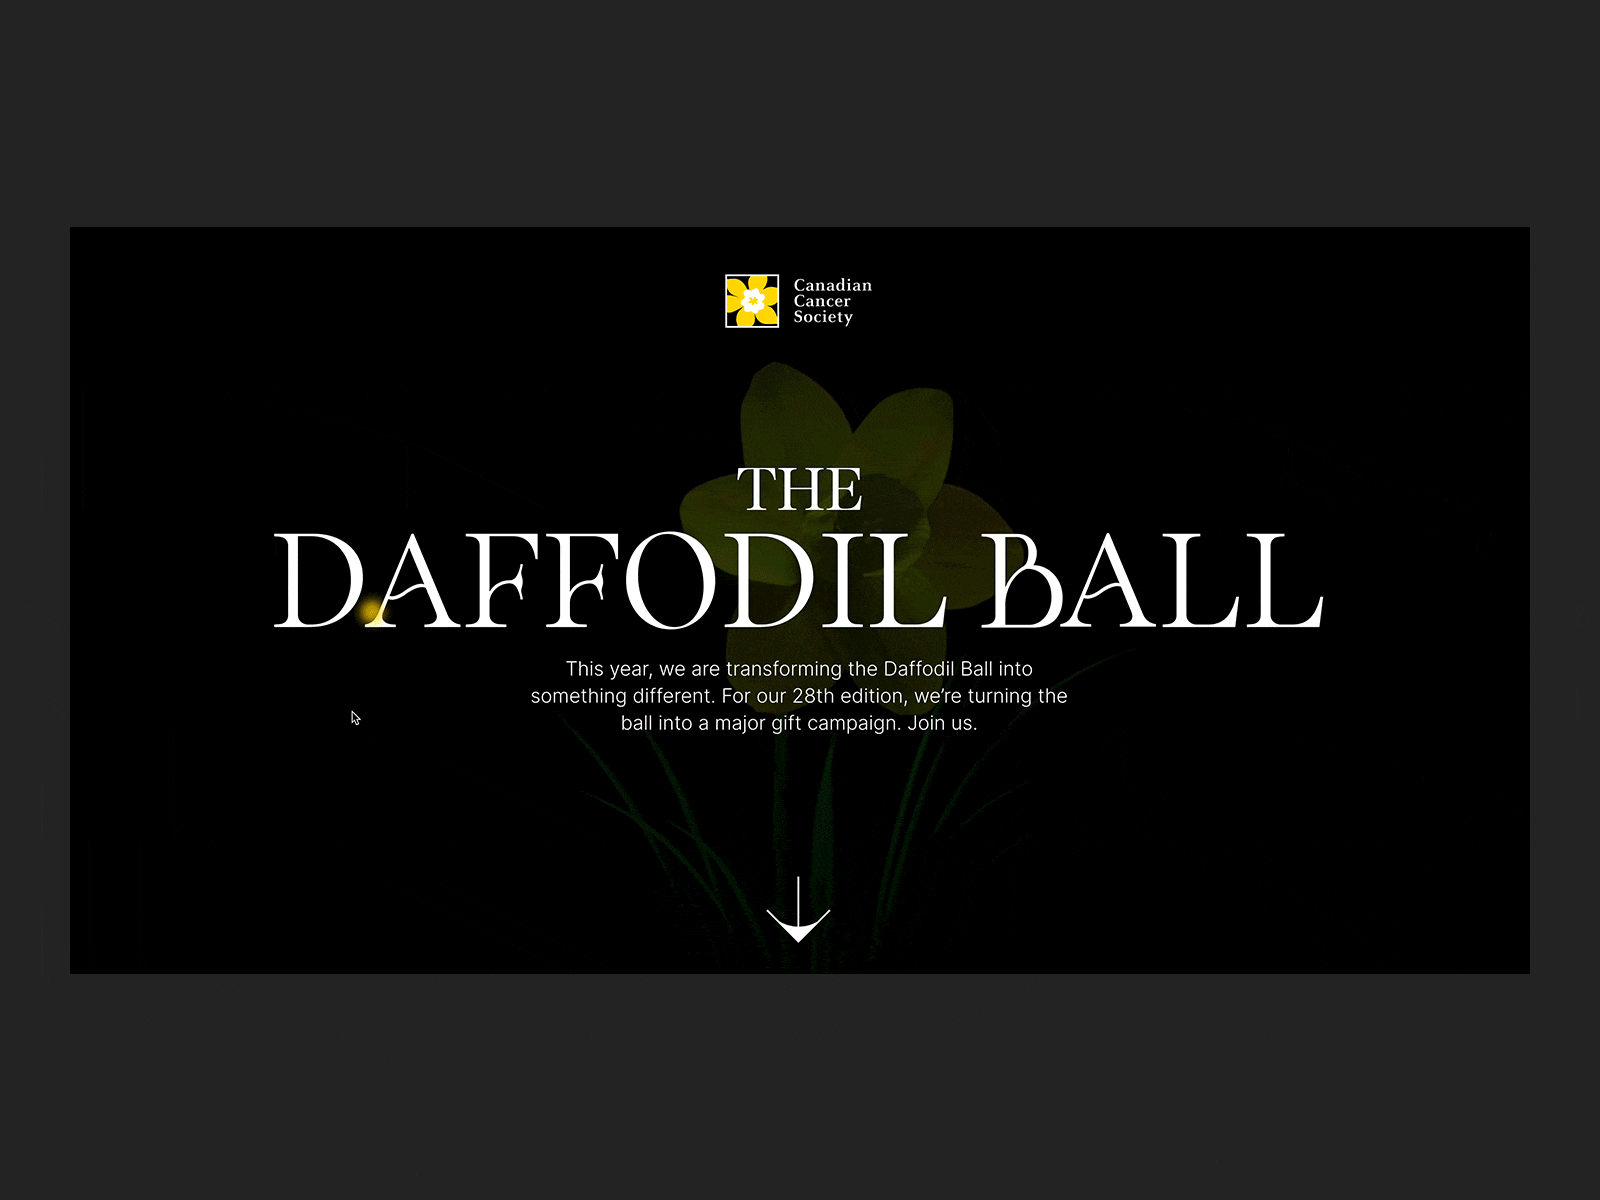 The Daffodil Ball